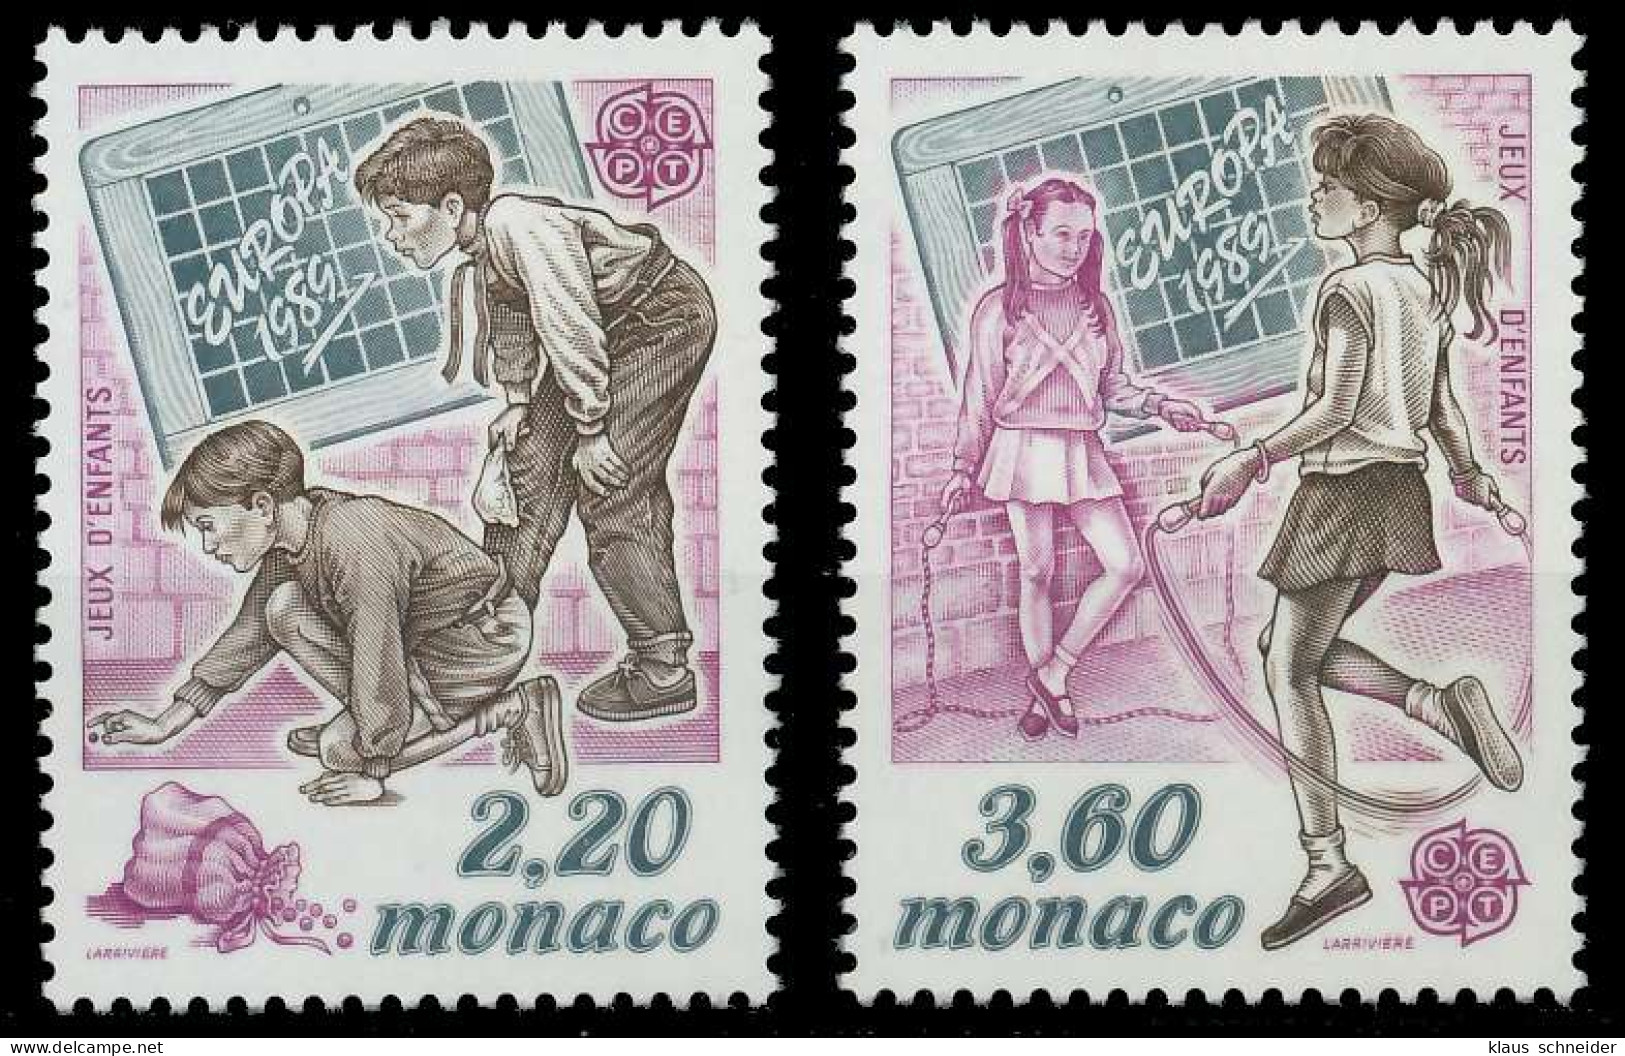 MONACO 1989 Nr 1919-1920 Postfrisch S1FD1D2 - Nuevos